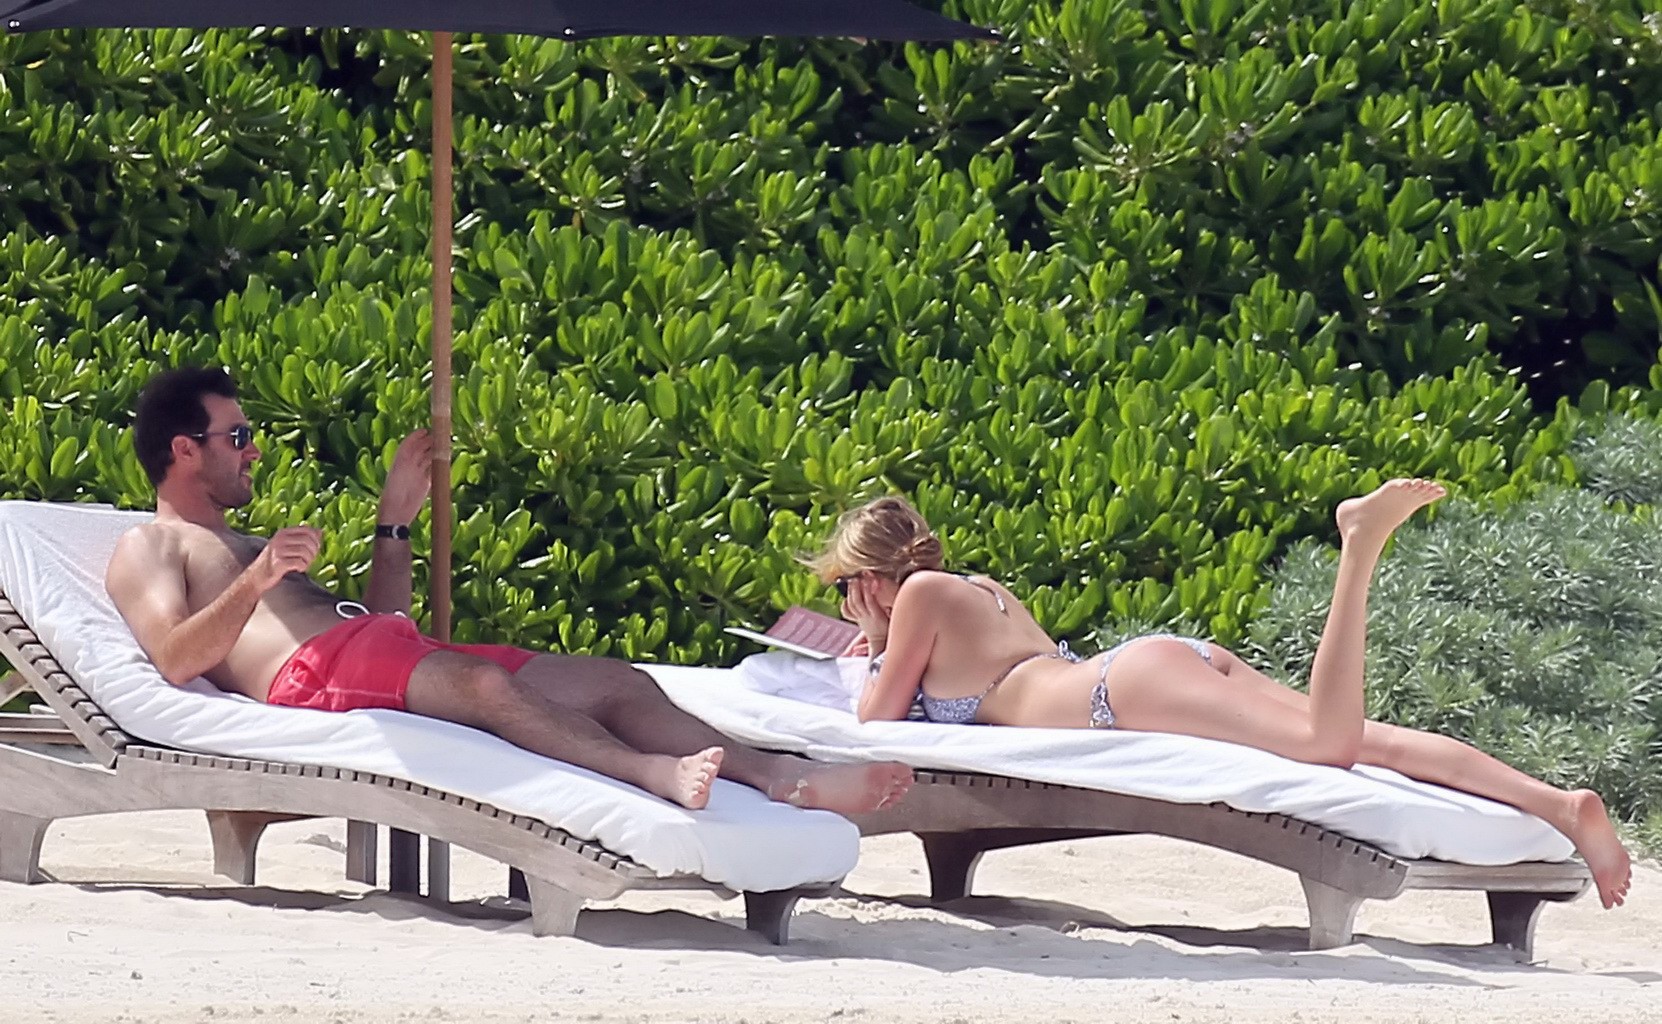 Kate upton bronceando sus melones lechosos y su culo en bikini plateado en la playa en mex
 #75190894